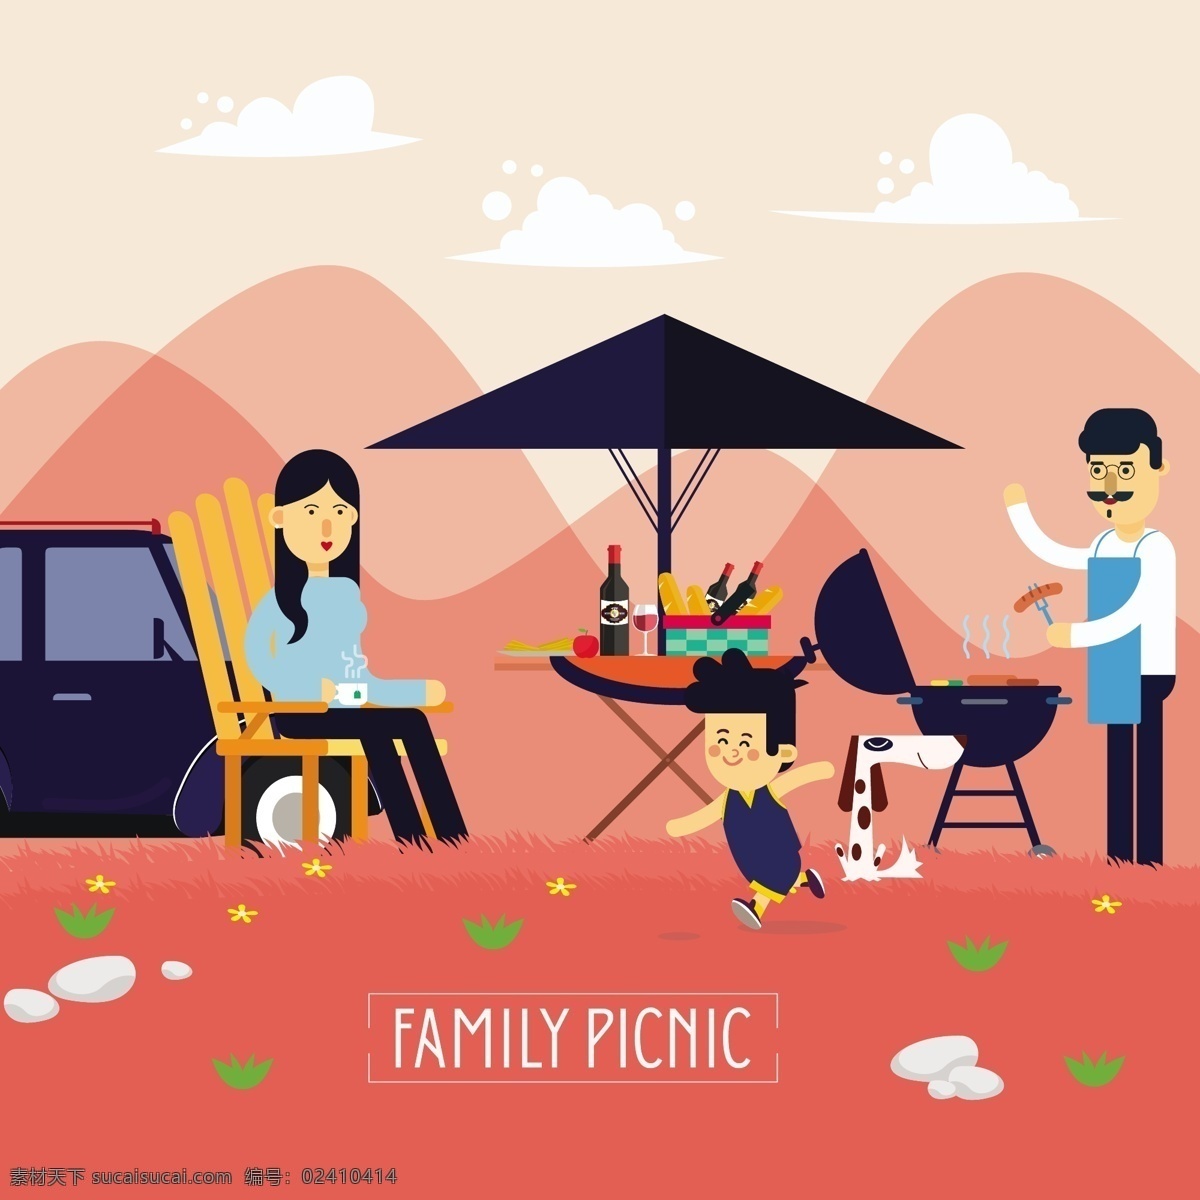 一家人 郊外 度假 矢量 元素 车 粉色背景 夫妻 孩子 烧烤